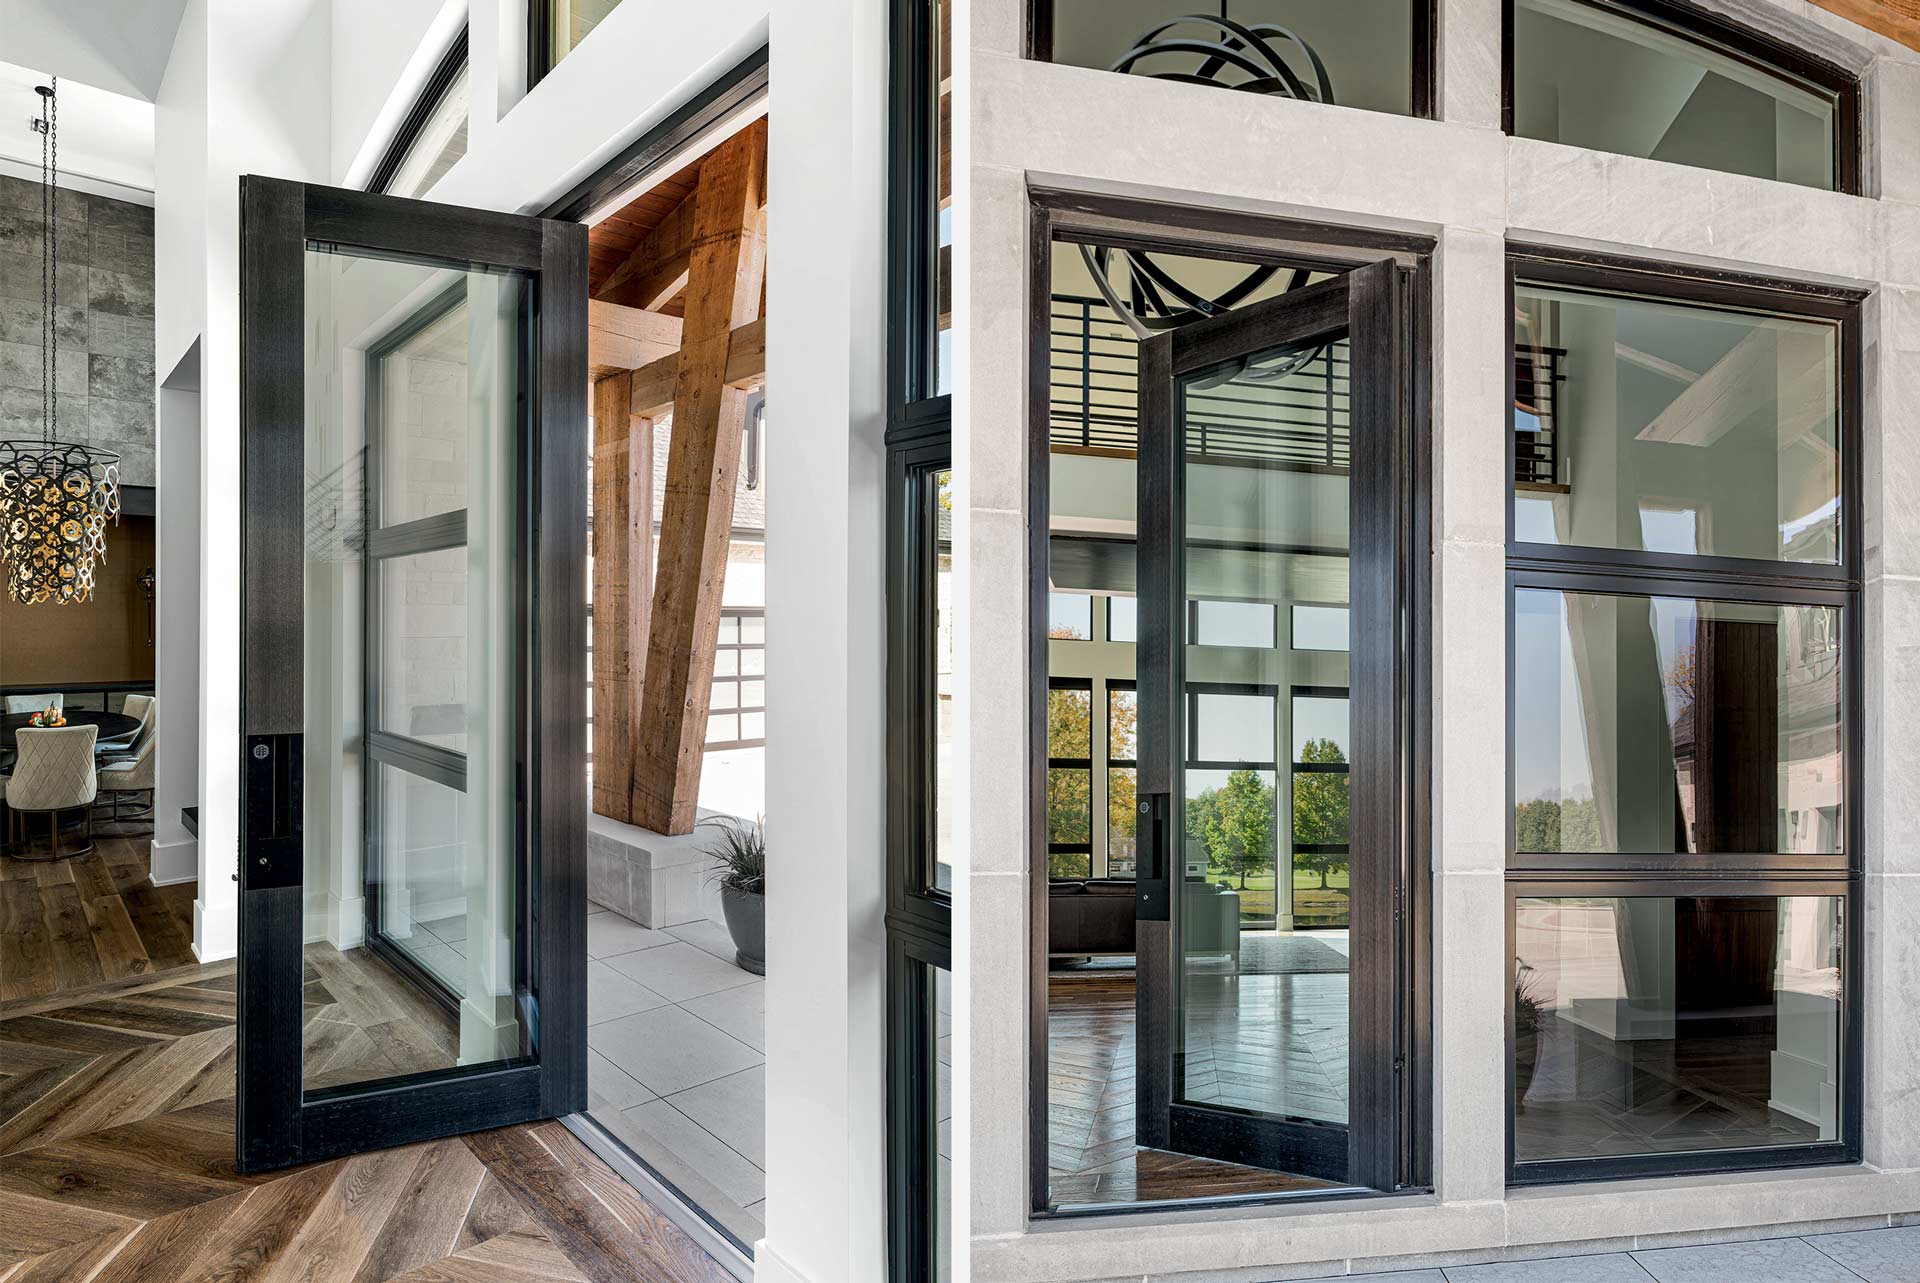 Nova la porta a bilico con vetro termico di sicurezza installata su una villa di lusso in America